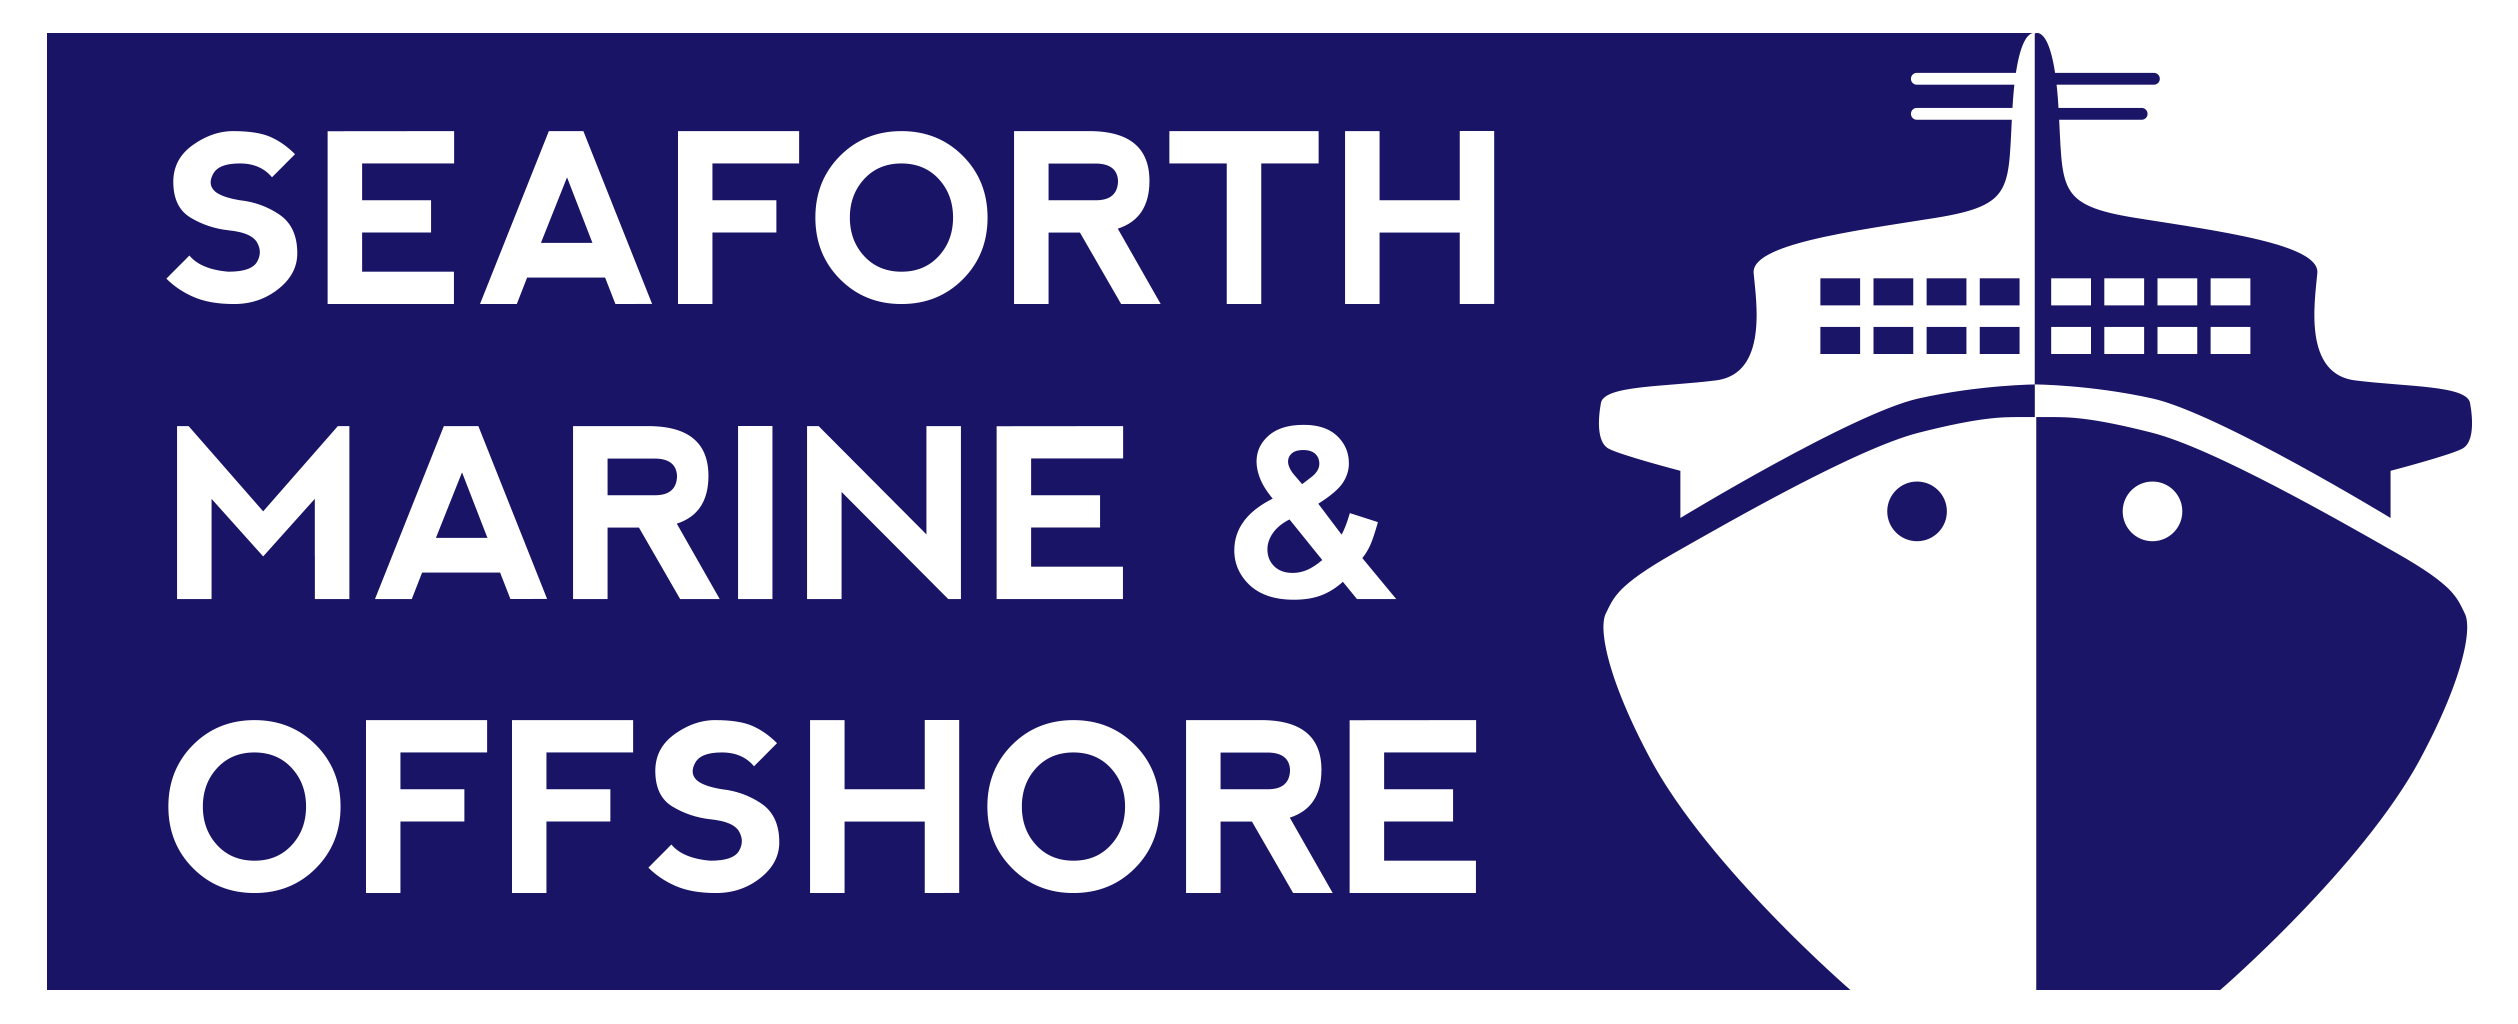 Seaforth Marine